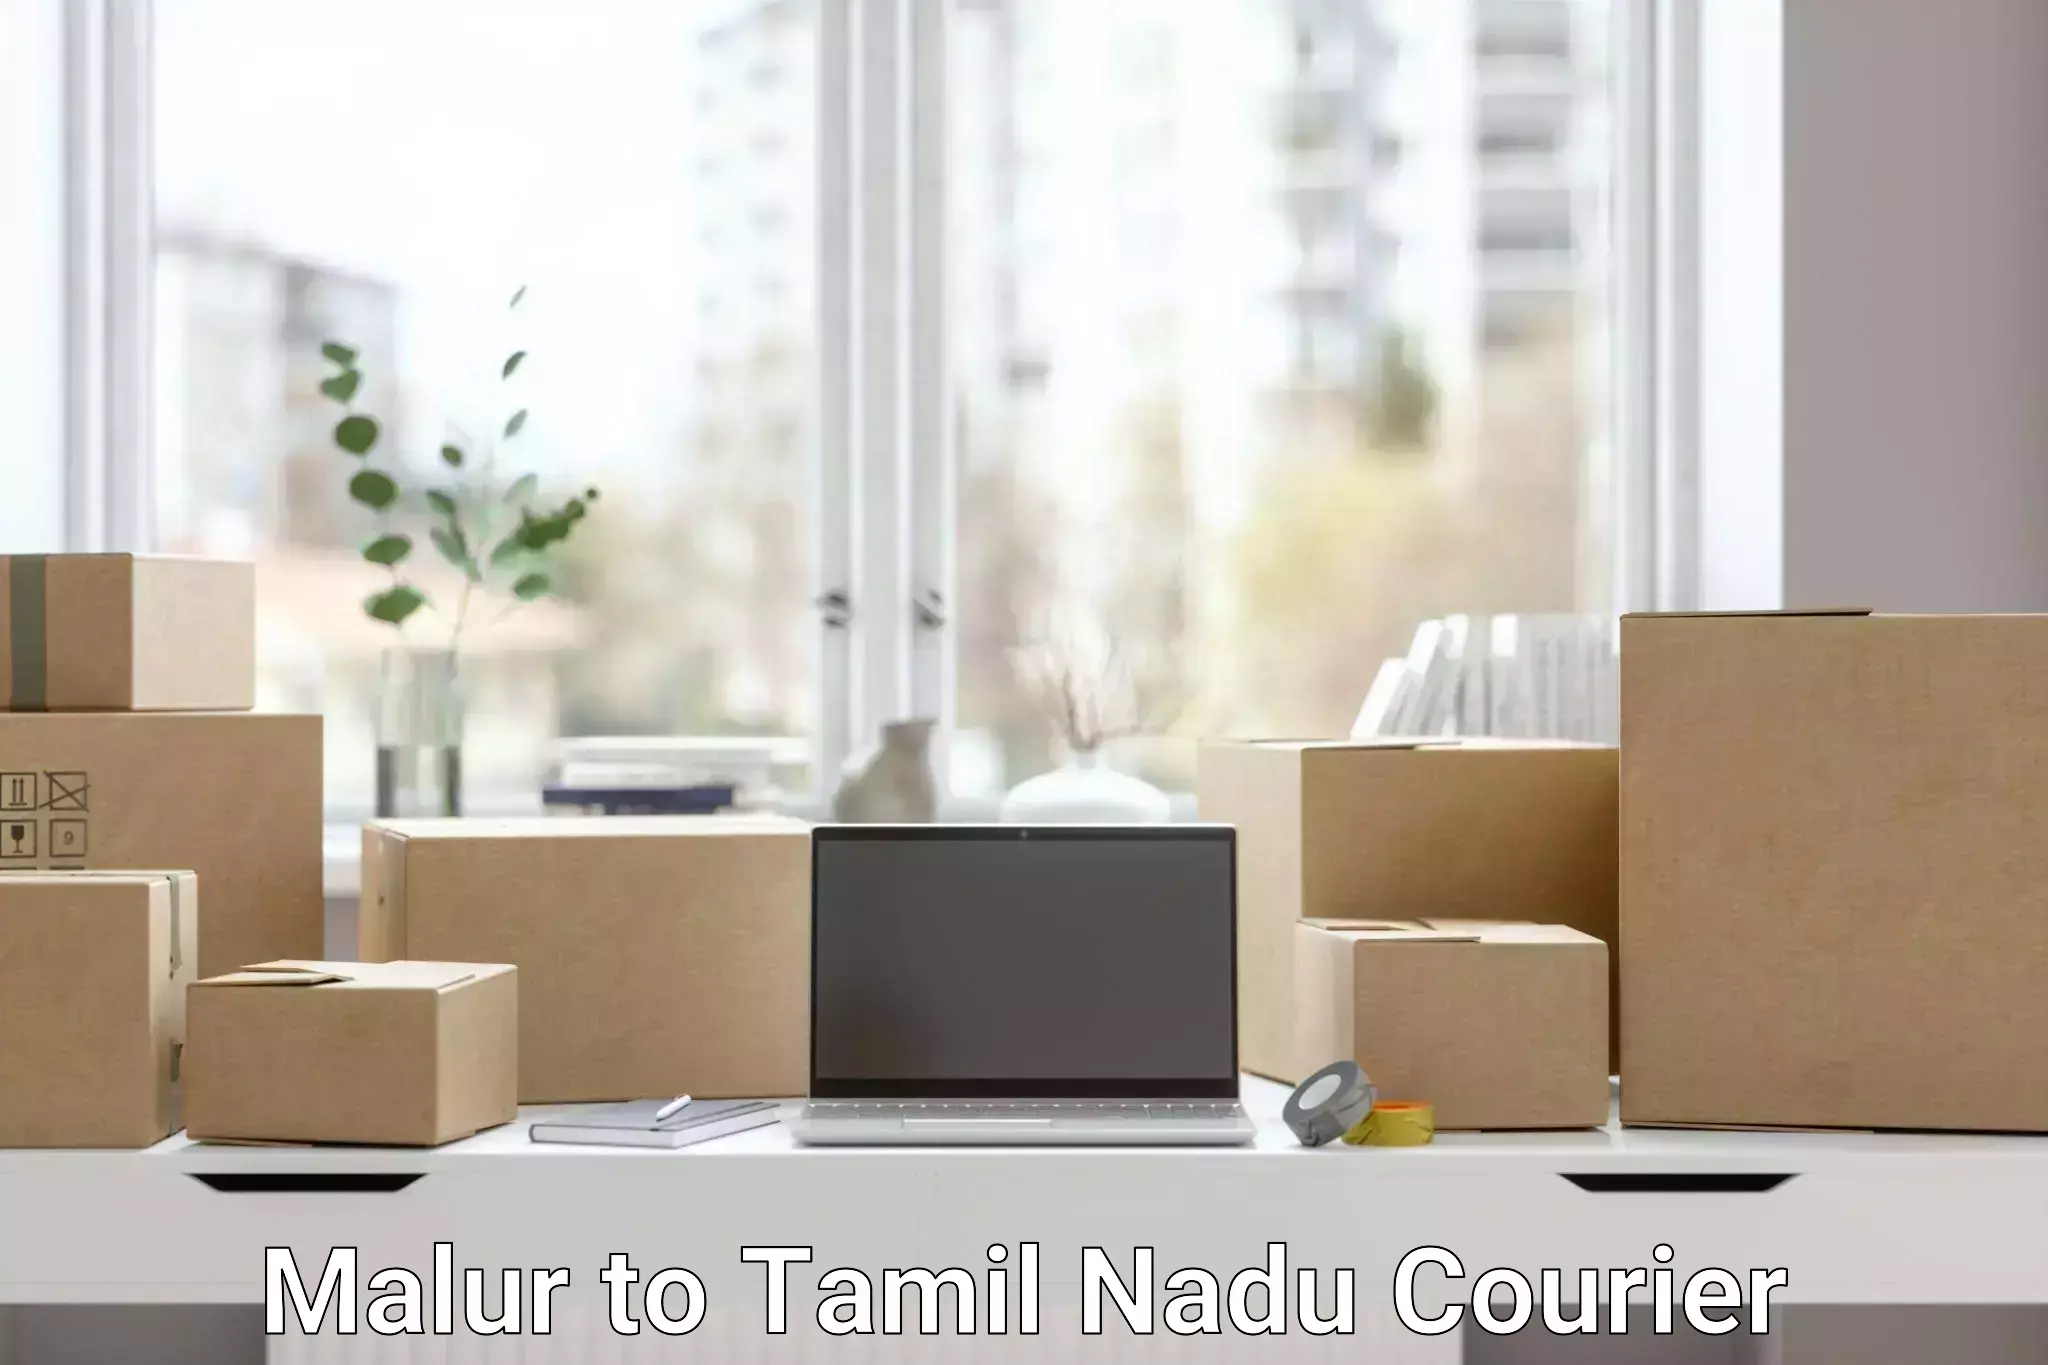 Logistics service provider Malur to Tamil Nadu